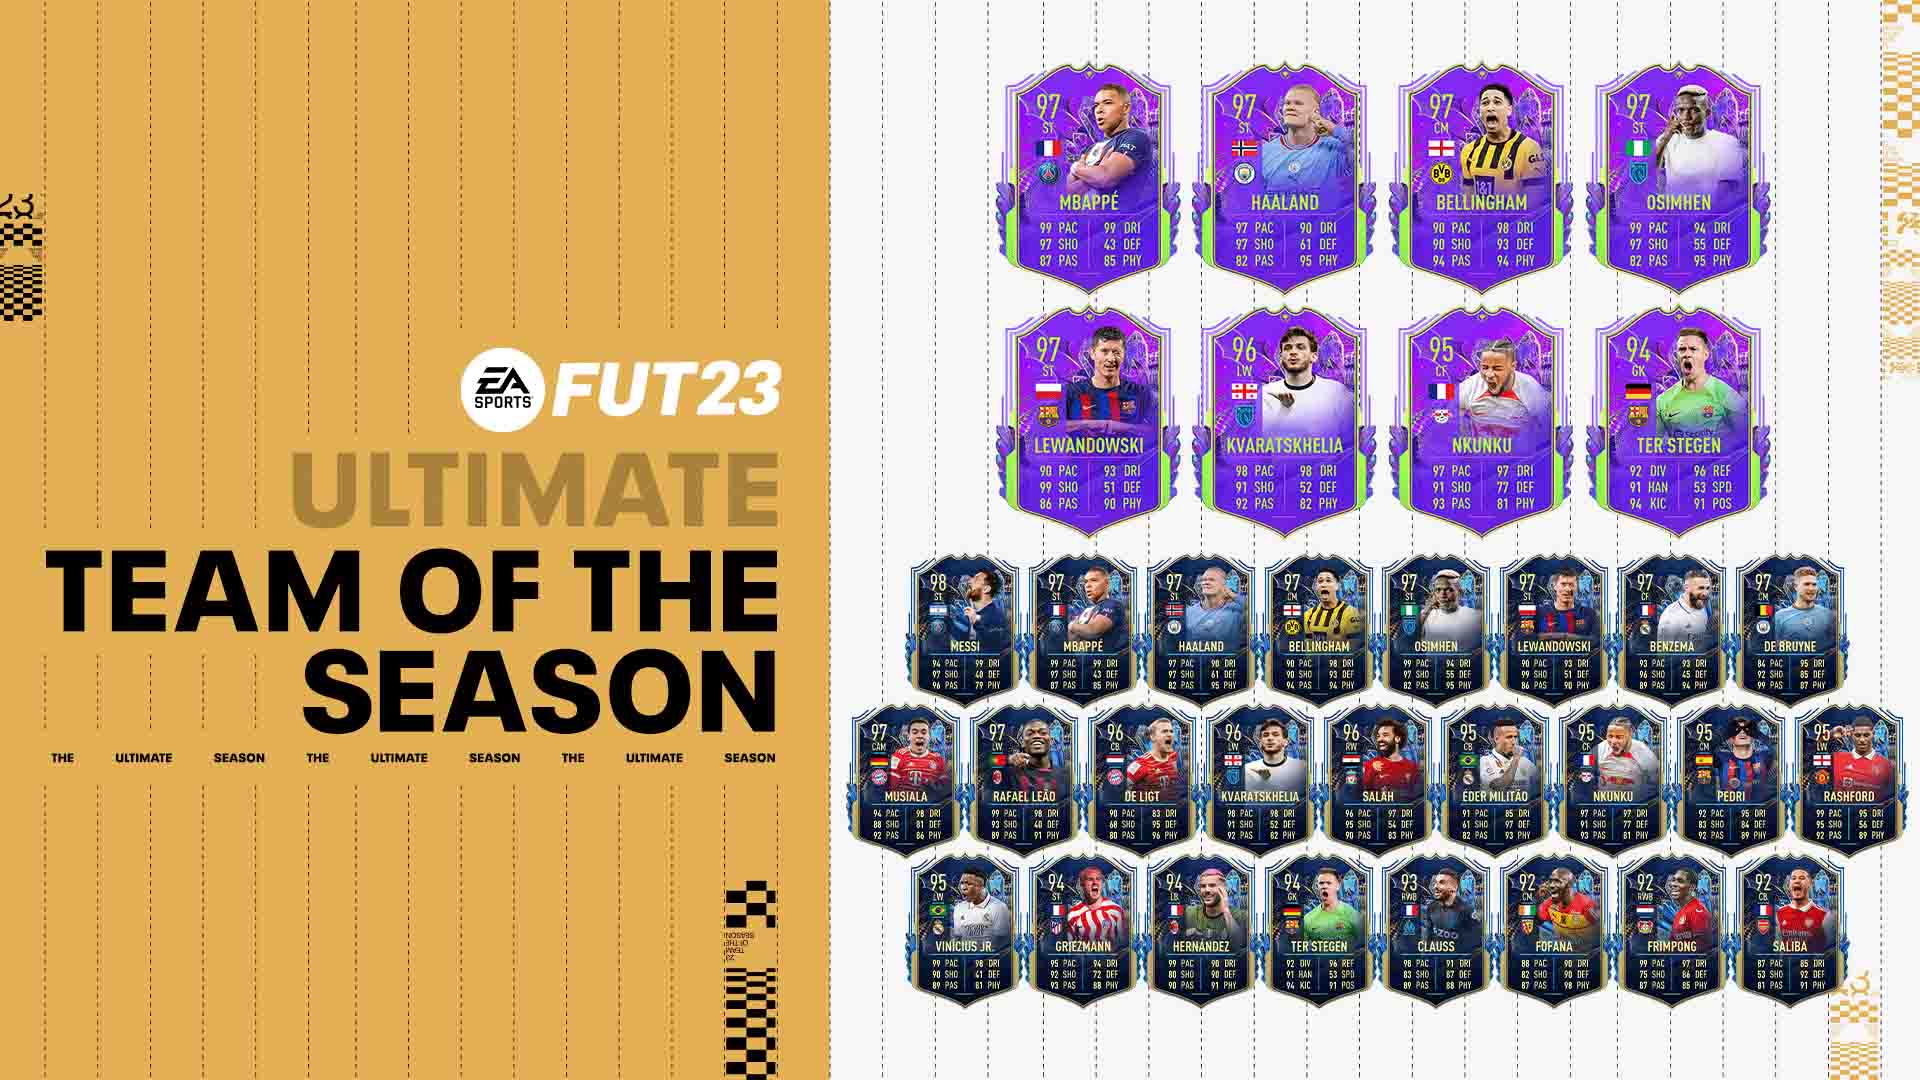 FIFA 23 Ultimate Team of the Season list